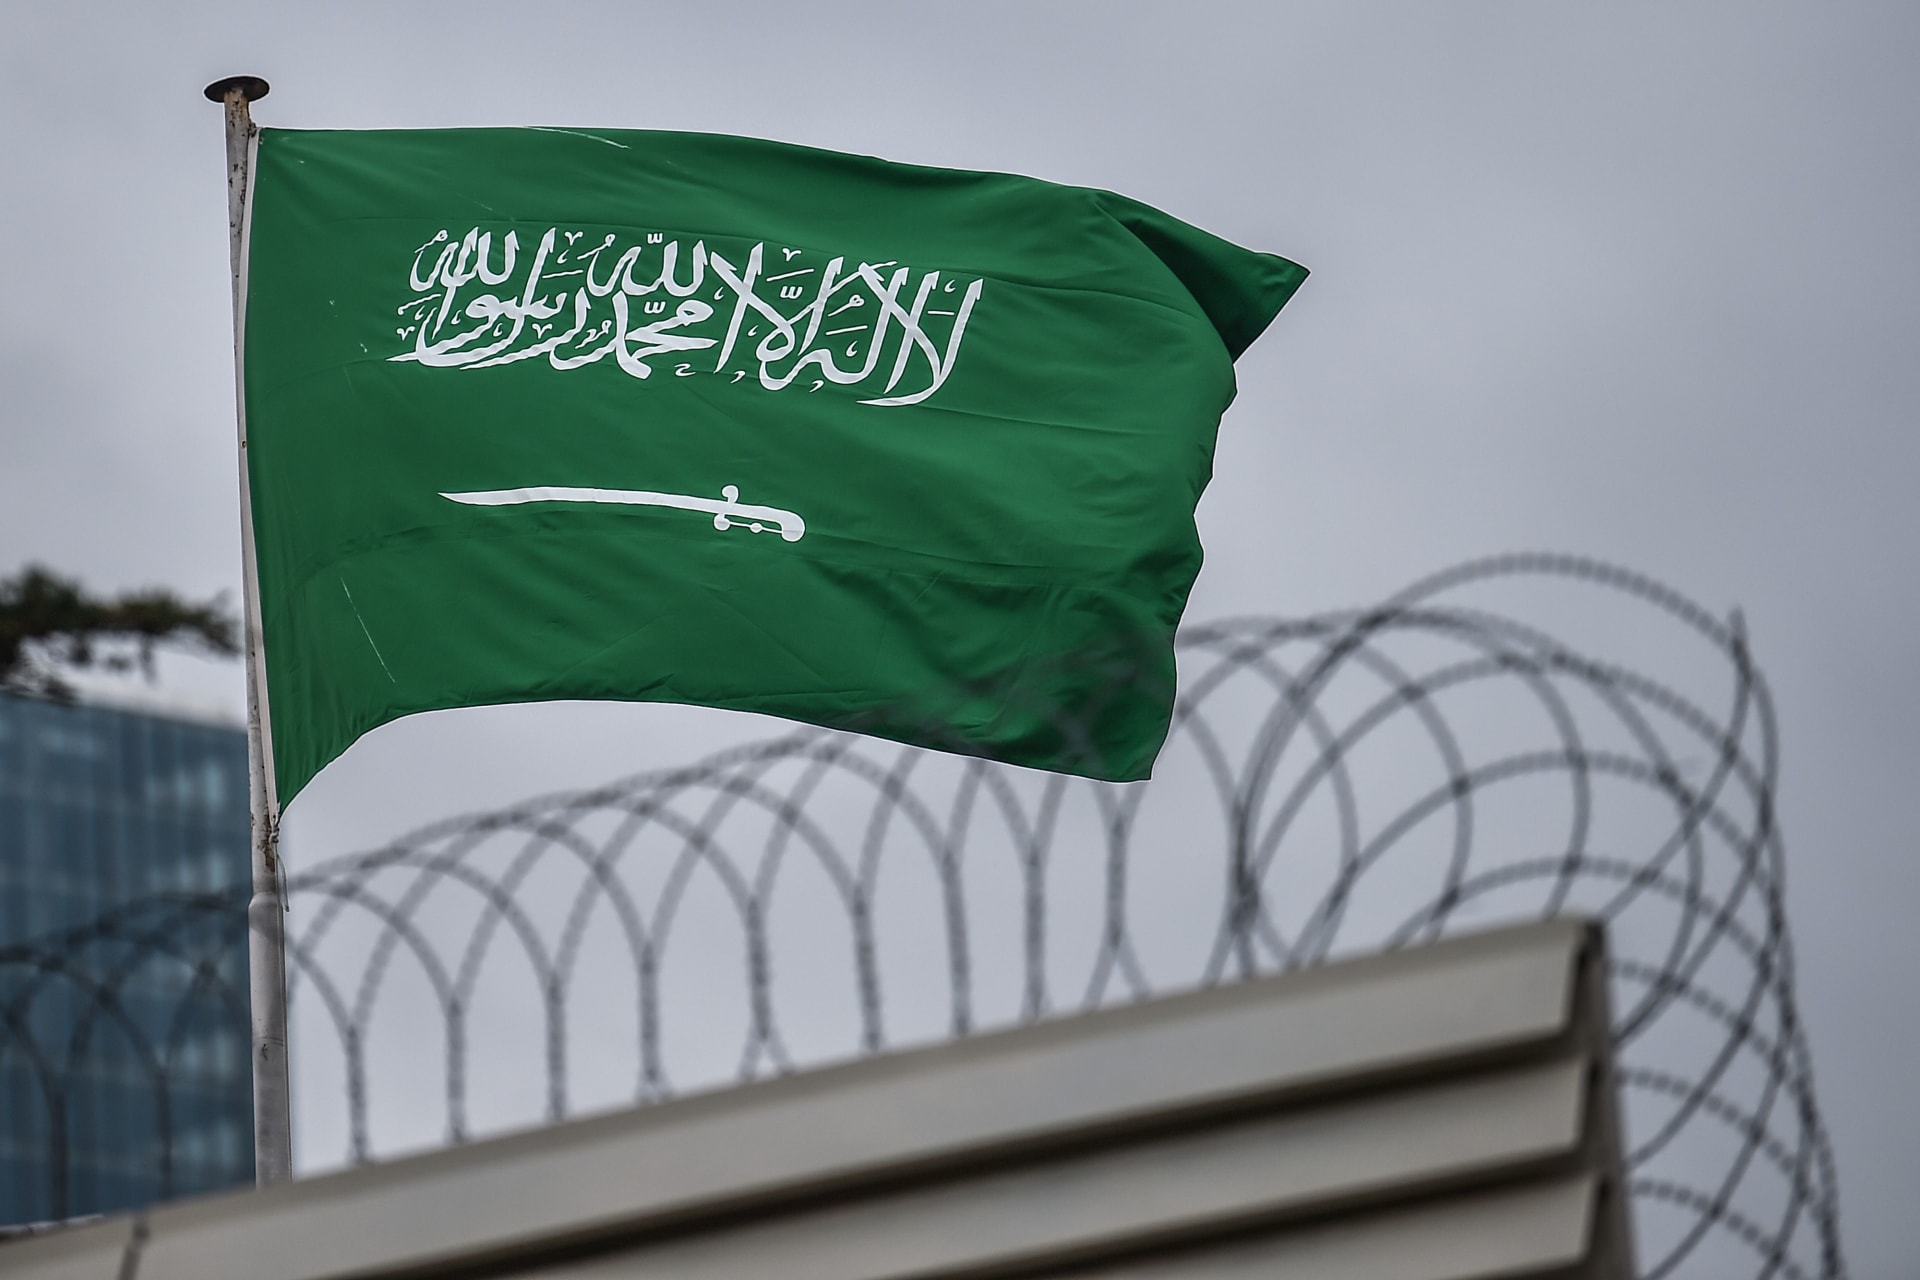 السعودية.. إلقاء القبض على شخص تحرش بقاصر بـ"إيحاءات جنسية"